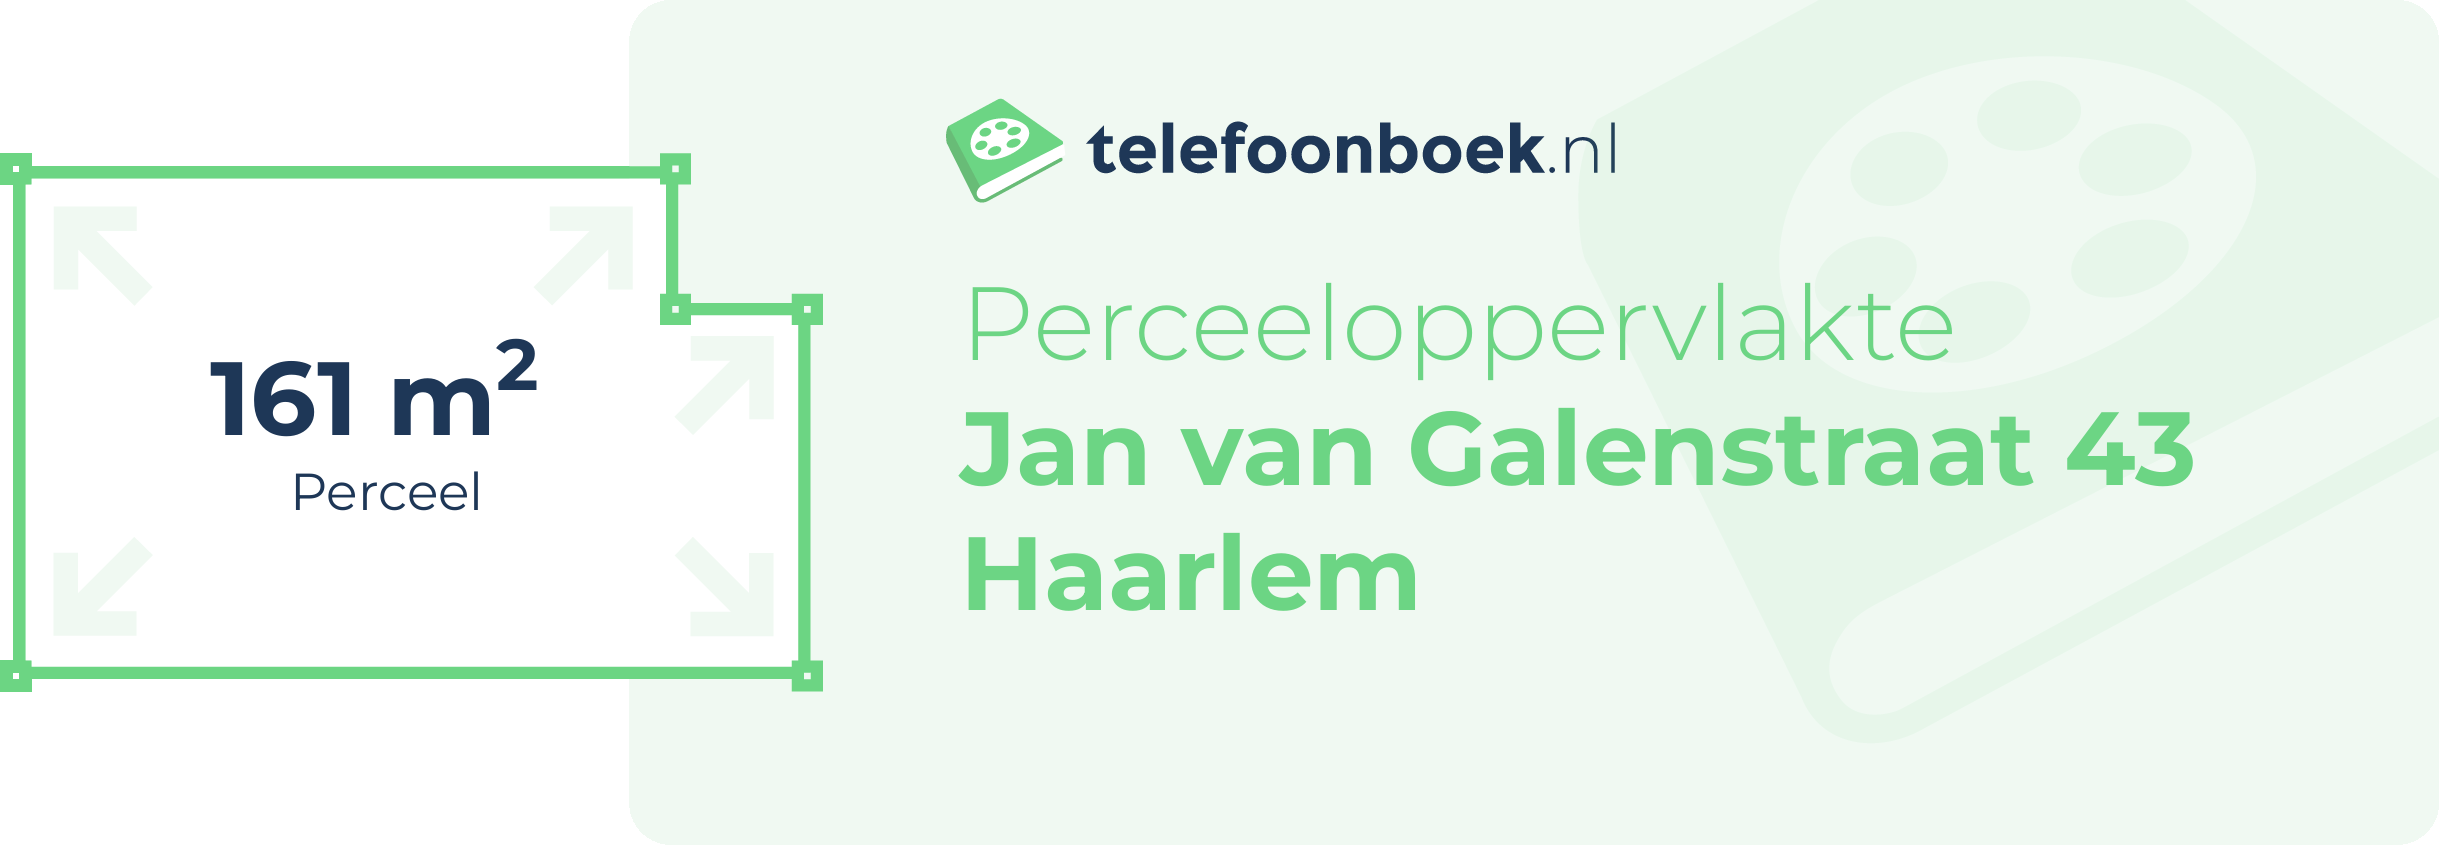 Perceeloppervlakte Jan Van Galenstraat 43 Haarlem